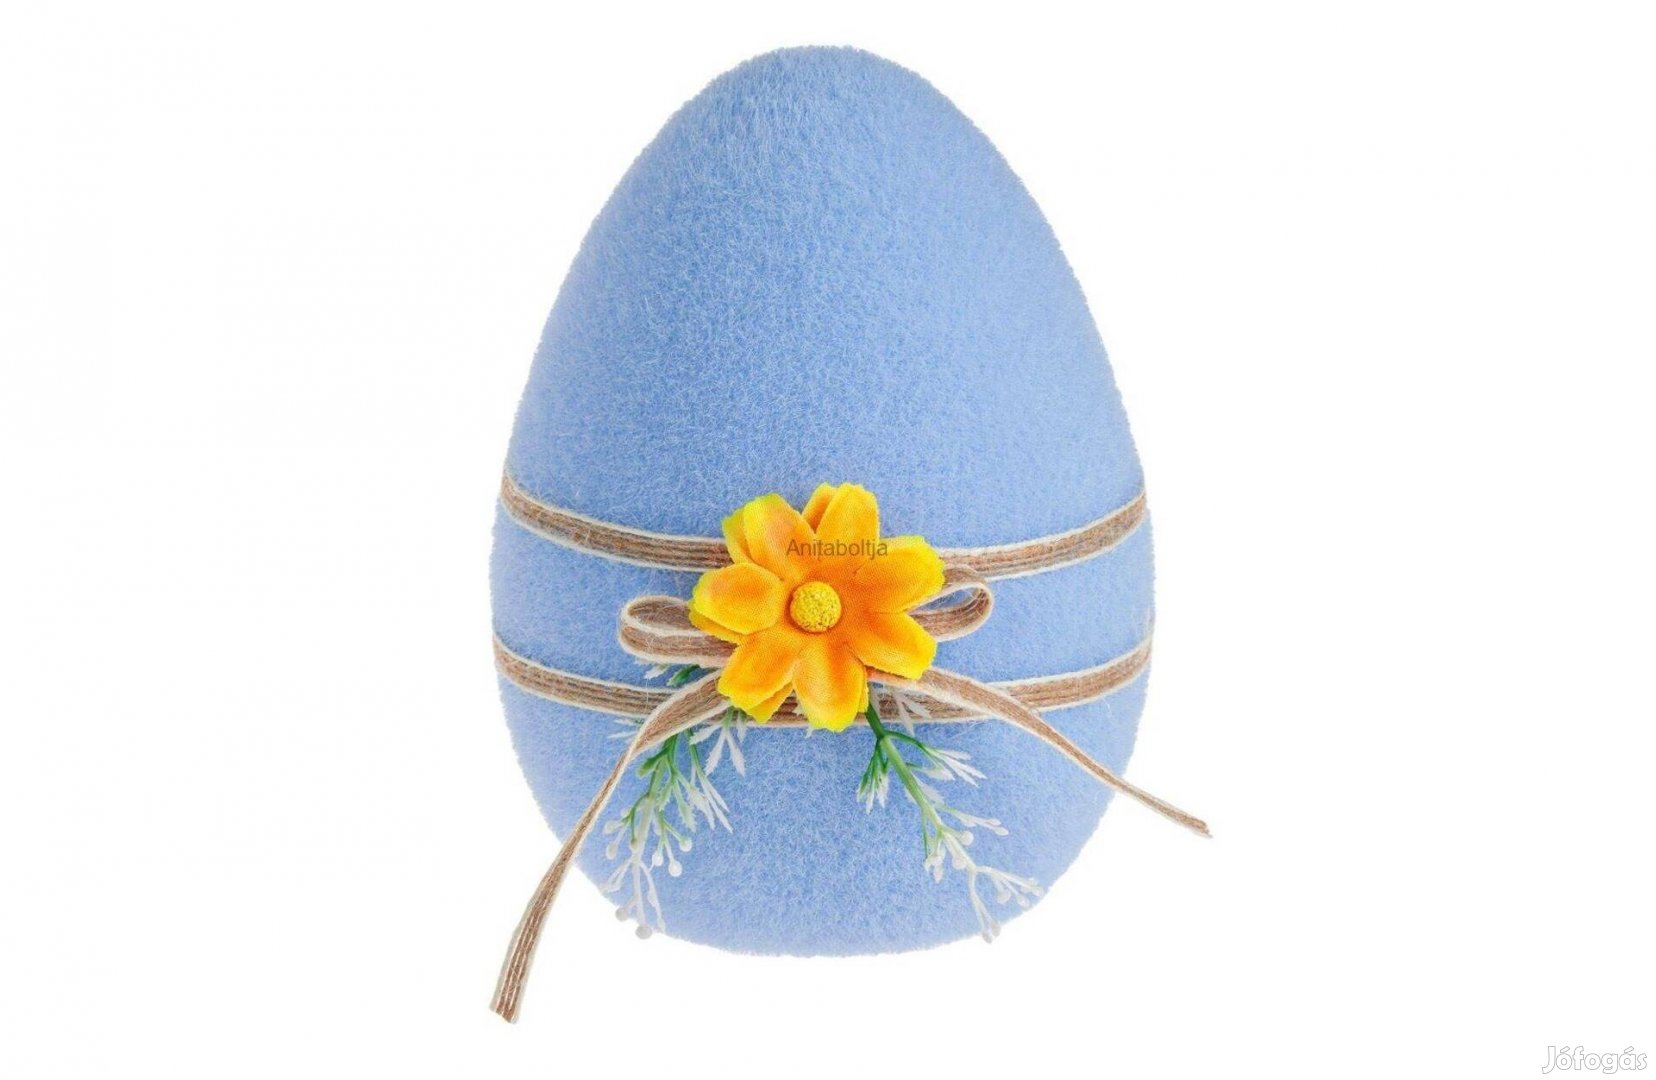 Kék hab nyúl dekoratív húsvéti figura 10x12cm